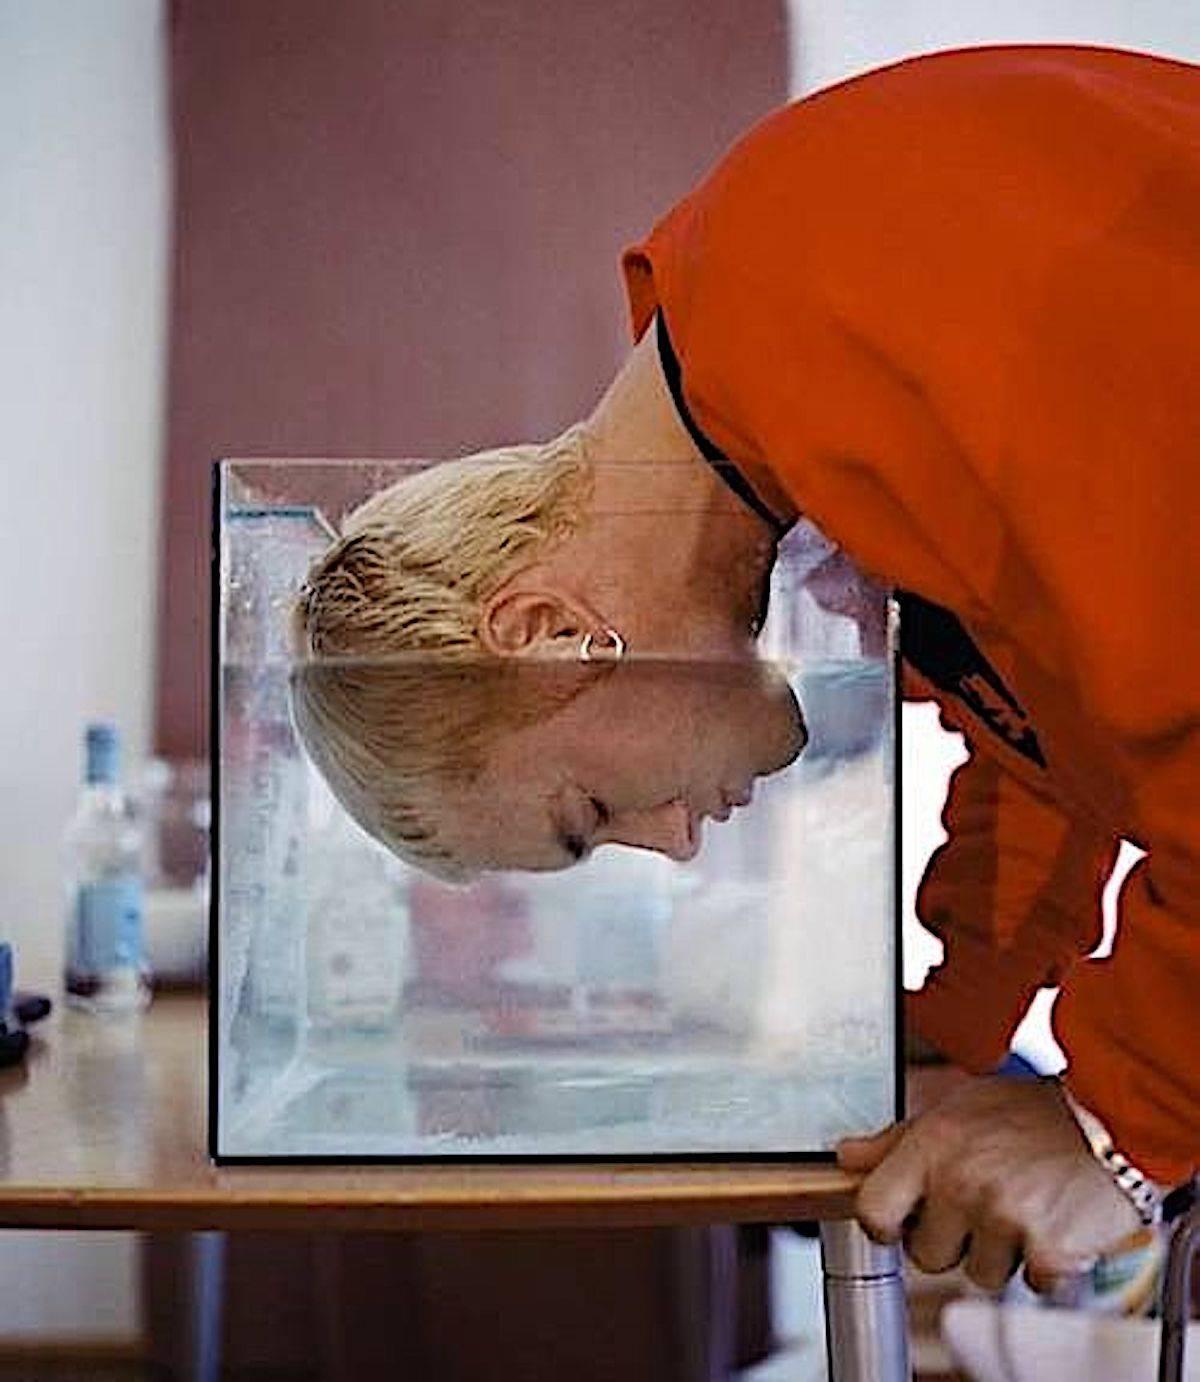 Eminem 1999 (non encadré) photo figurative portrait contemporain rouge